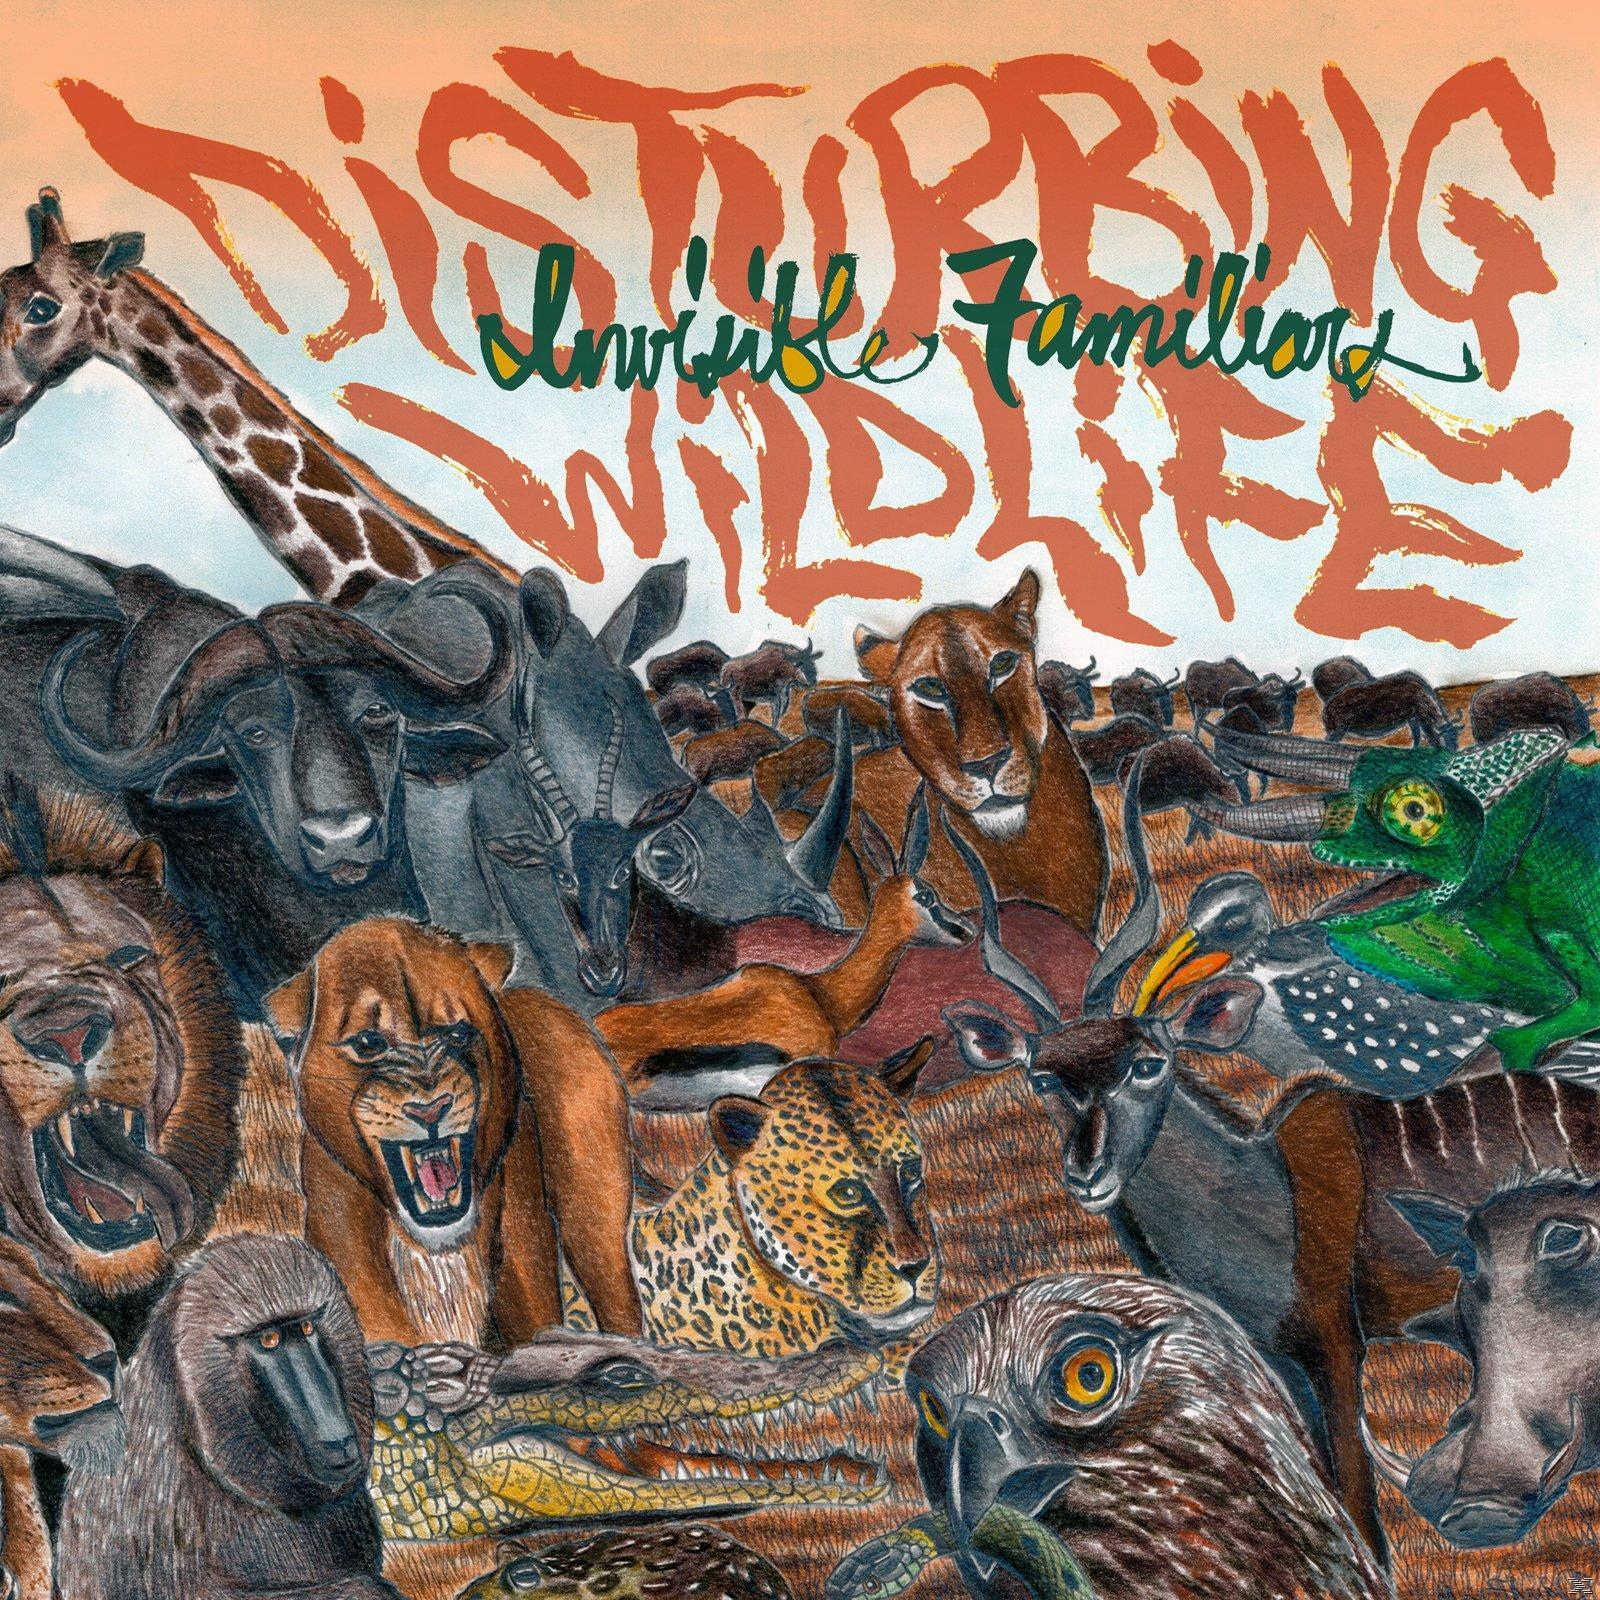 Invisible Familiars - Disturbing (CD) - Wildlife